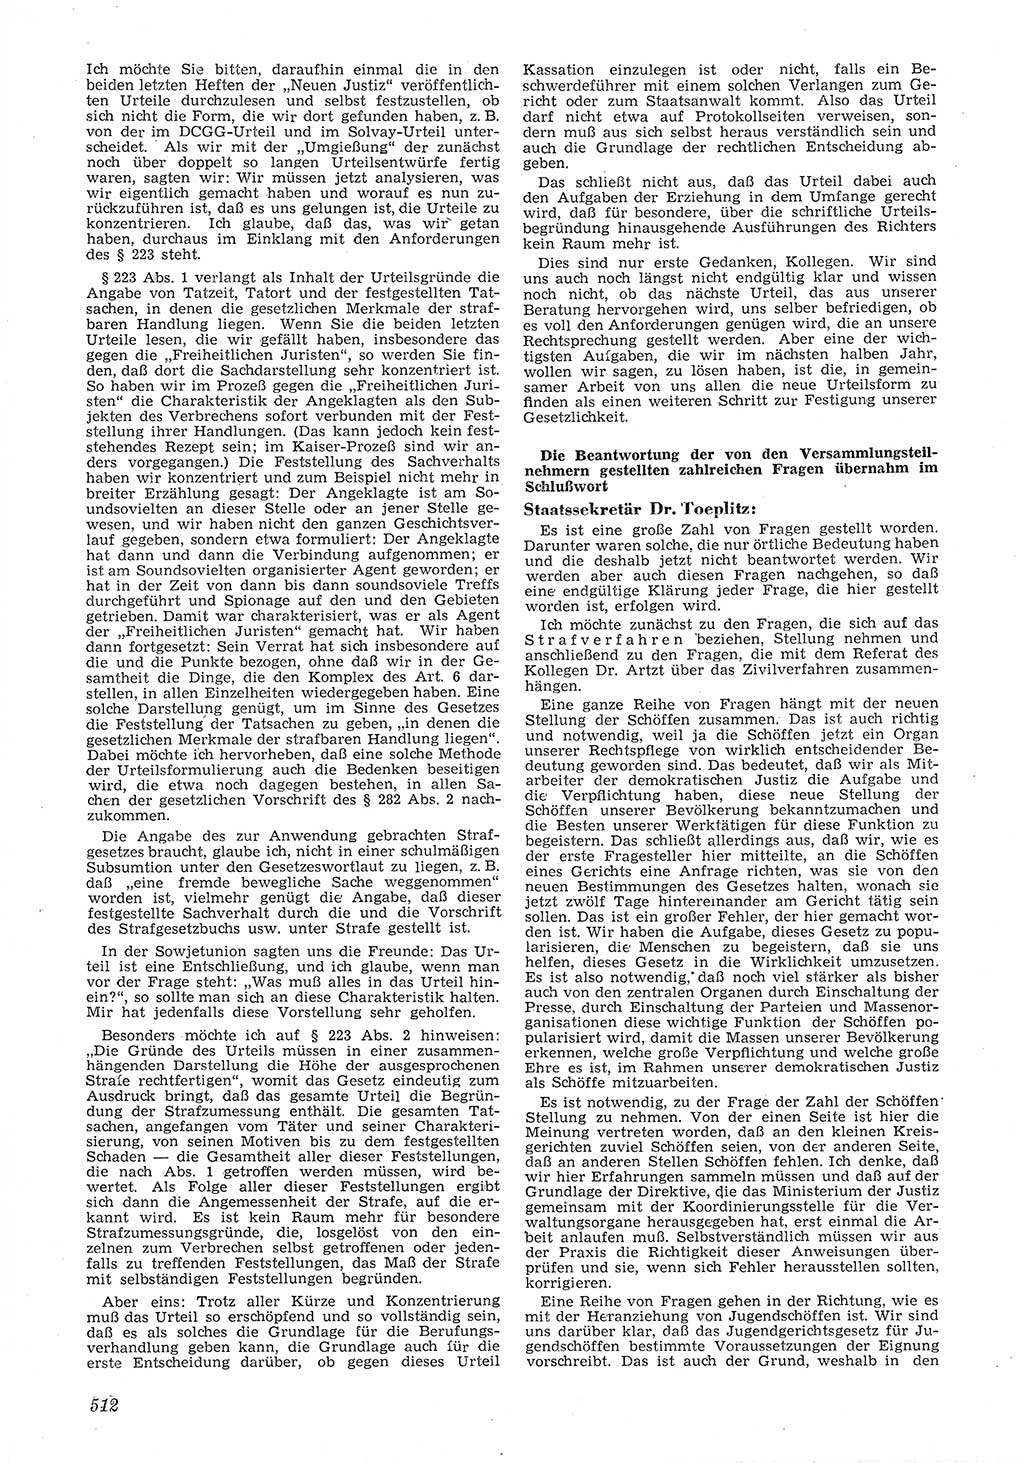 Neue Justiz (NJ), Zeitschrift für Recht und Rechtswissenschaft [Deutsche Demokratische Republik (DDR)], 6. Jahrgang 1952, Seite 512 (NJ DDR 1952, S. 512)